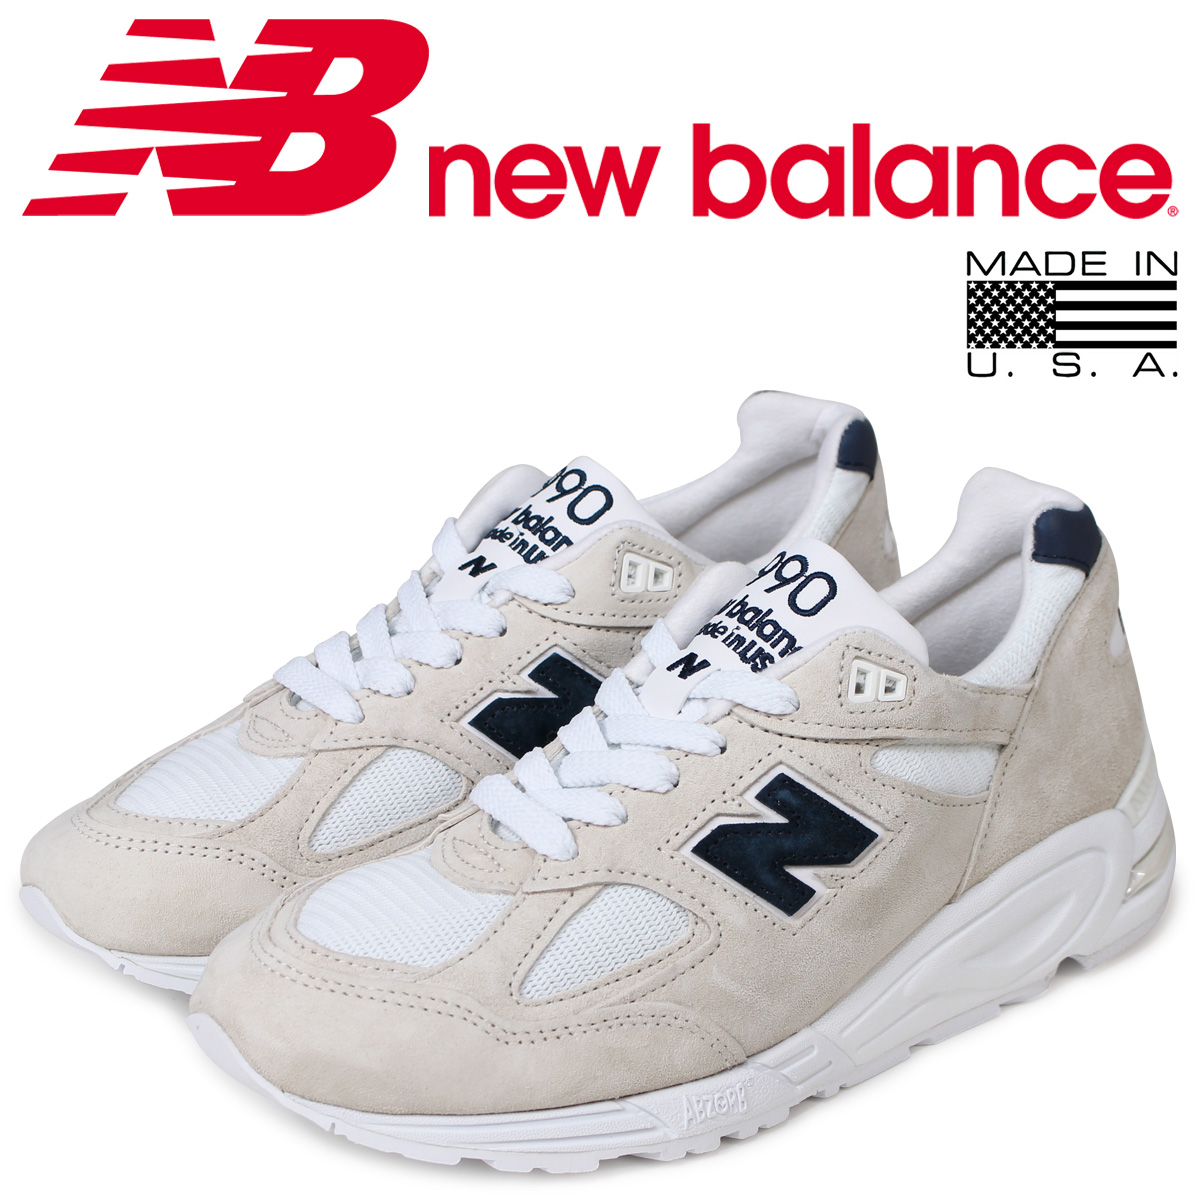 new balance 990 shop online